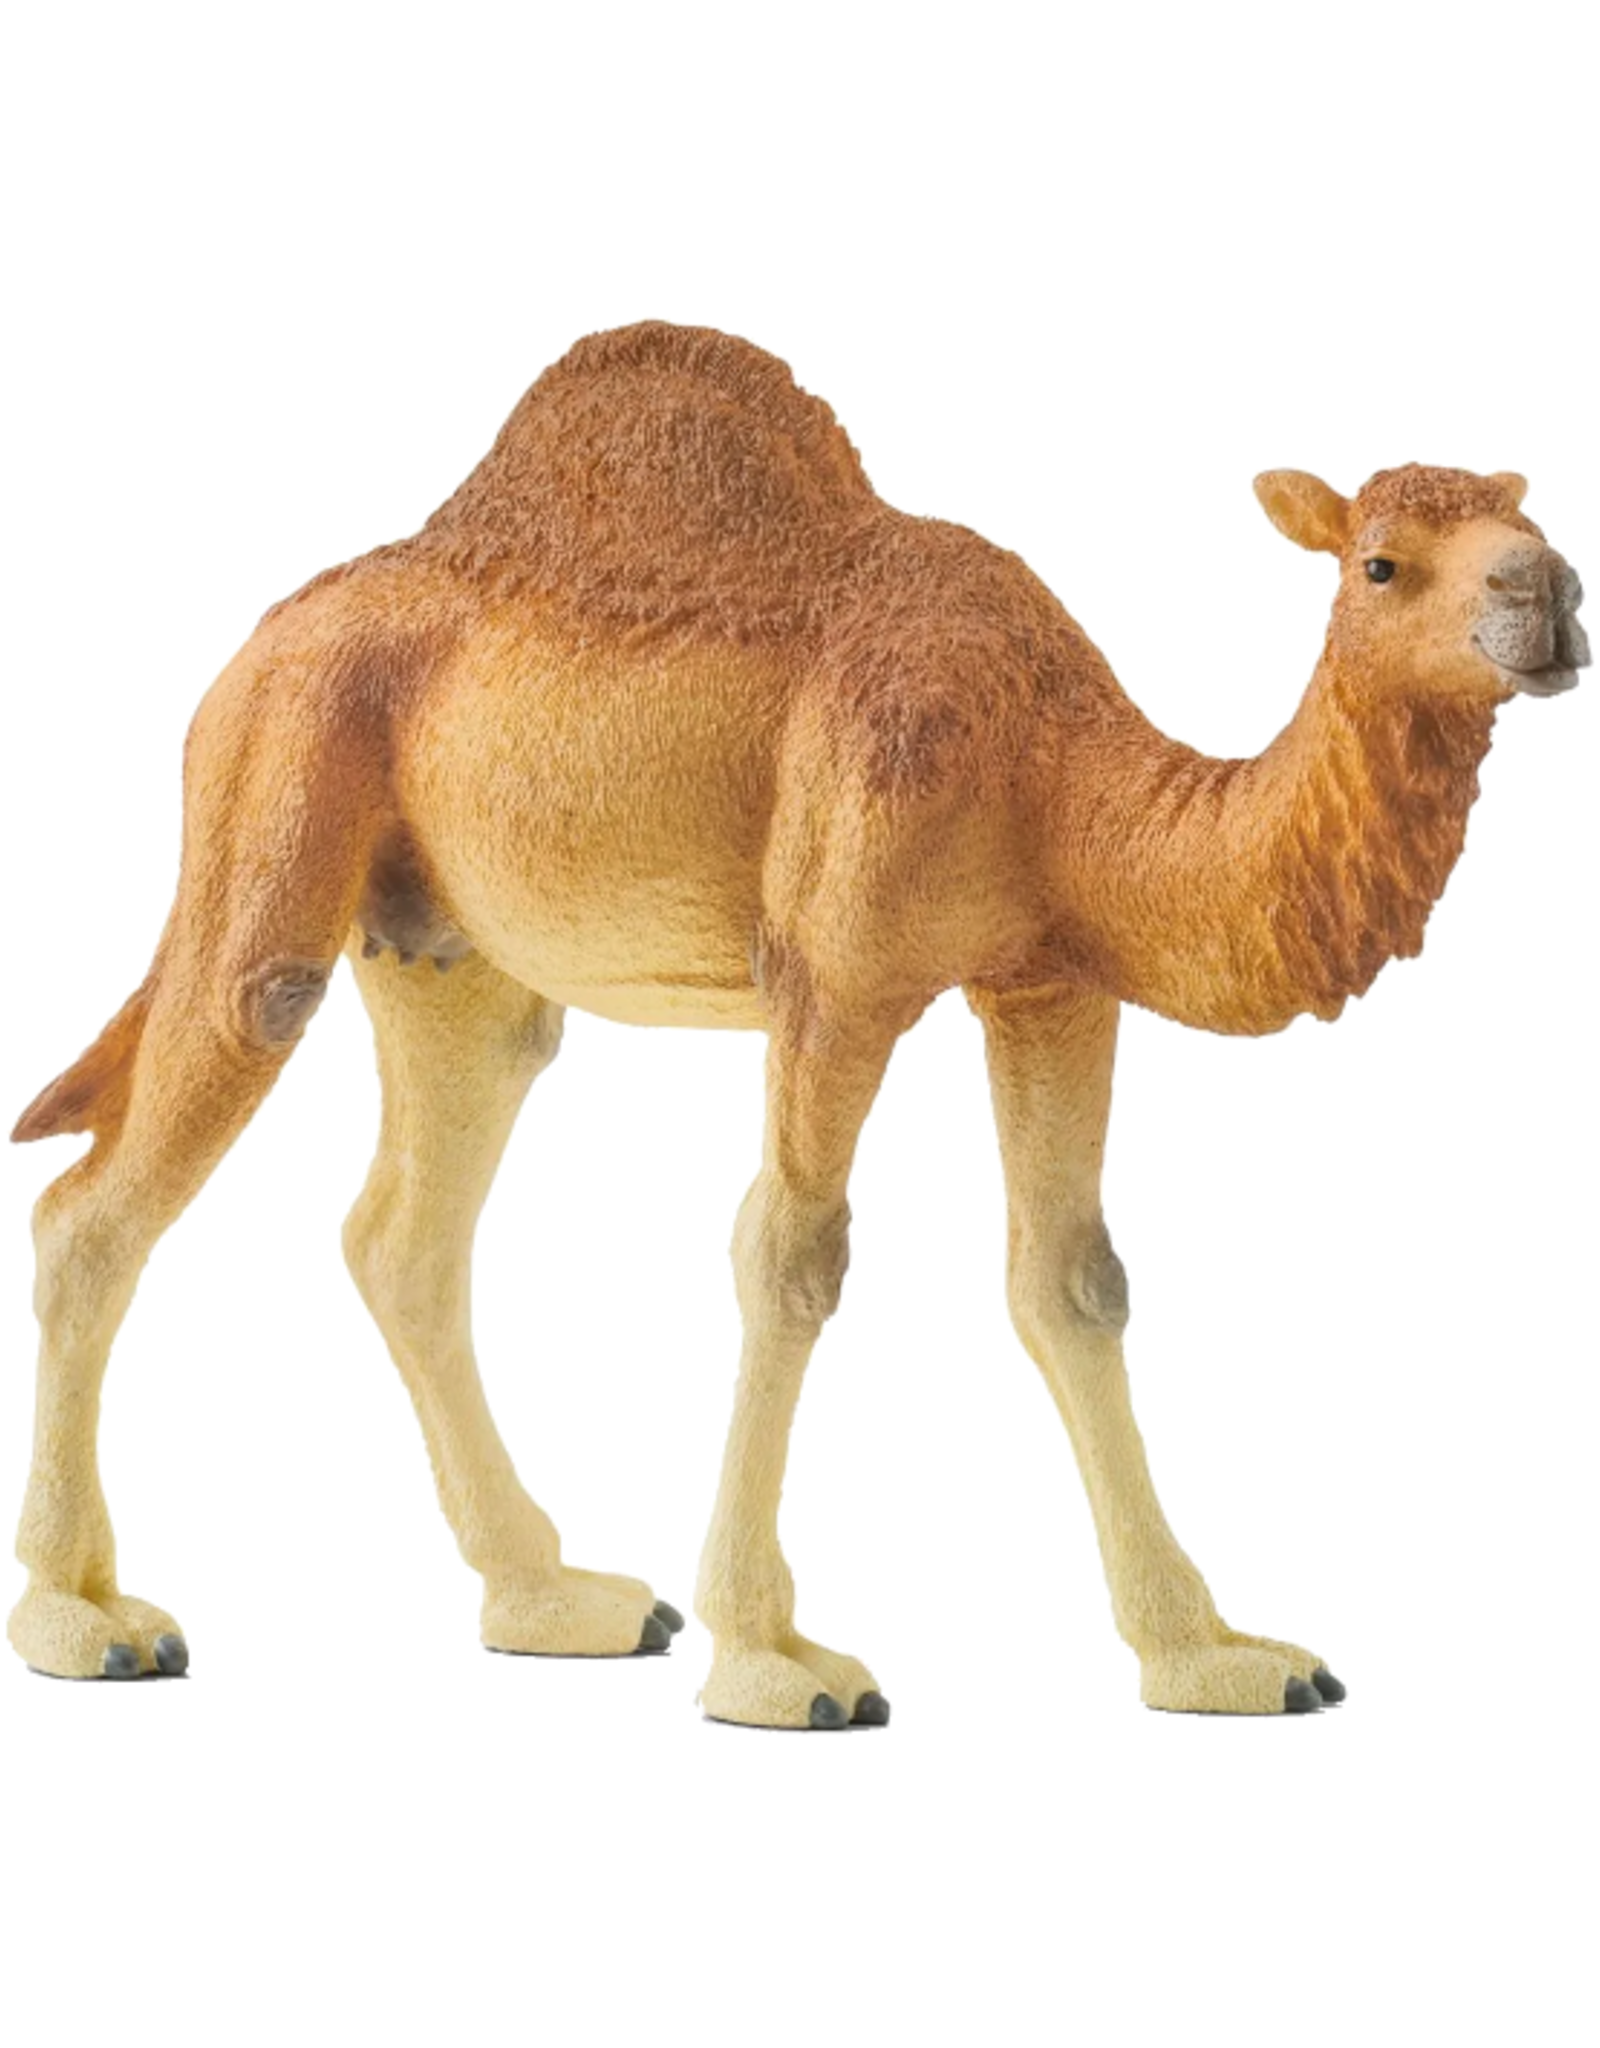 Schleich Schleich - Wild Life - 14832 - Dromedary (Camel)